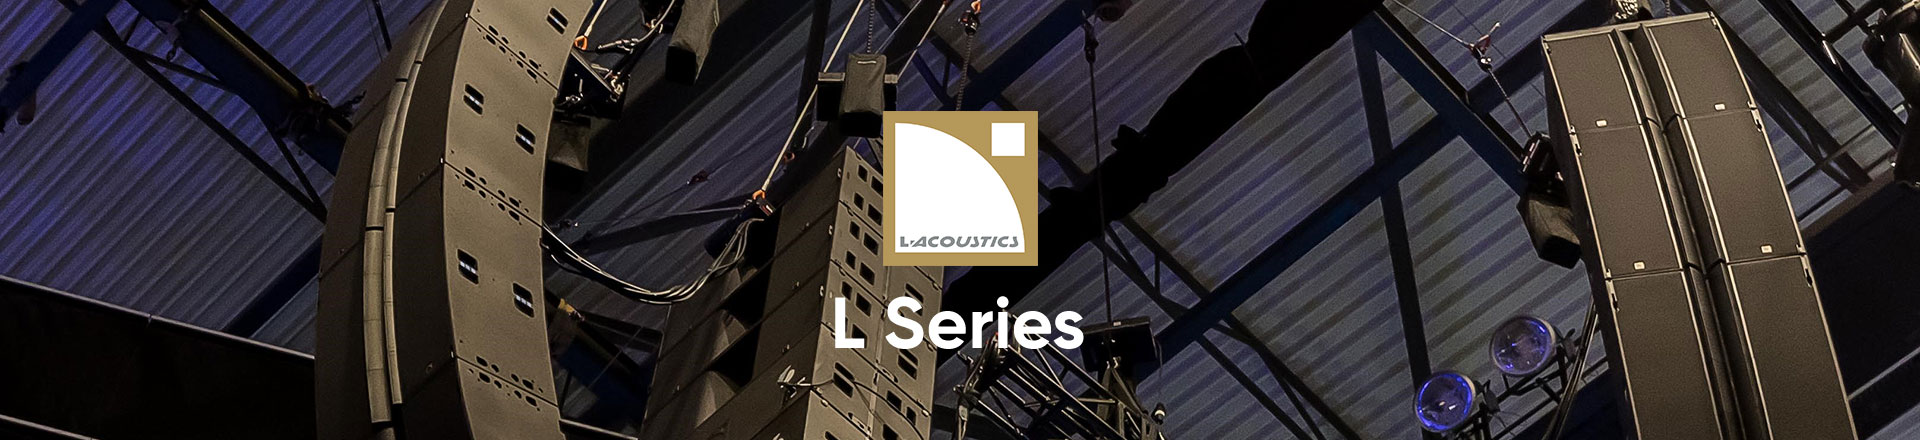 L-Acoustics L Series: Przełomowa koncepcja dźwięku koncertowego